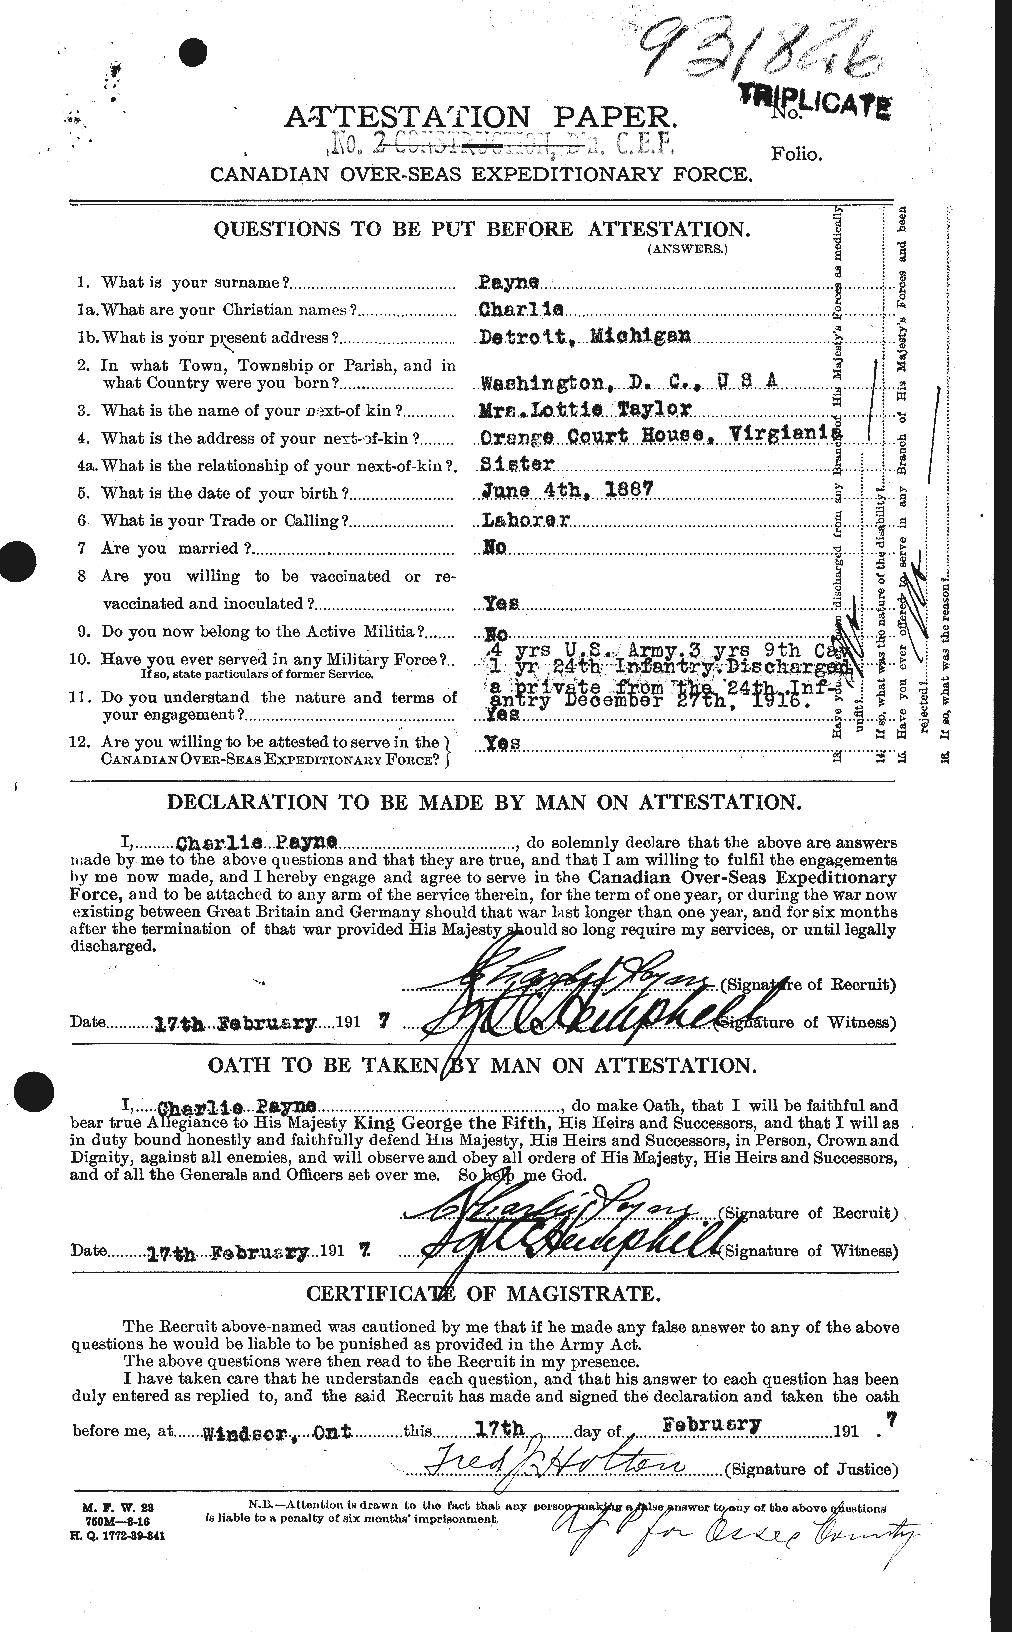 Dossiers du Personnel de la Première Guerre mondiale - CEC 569860a